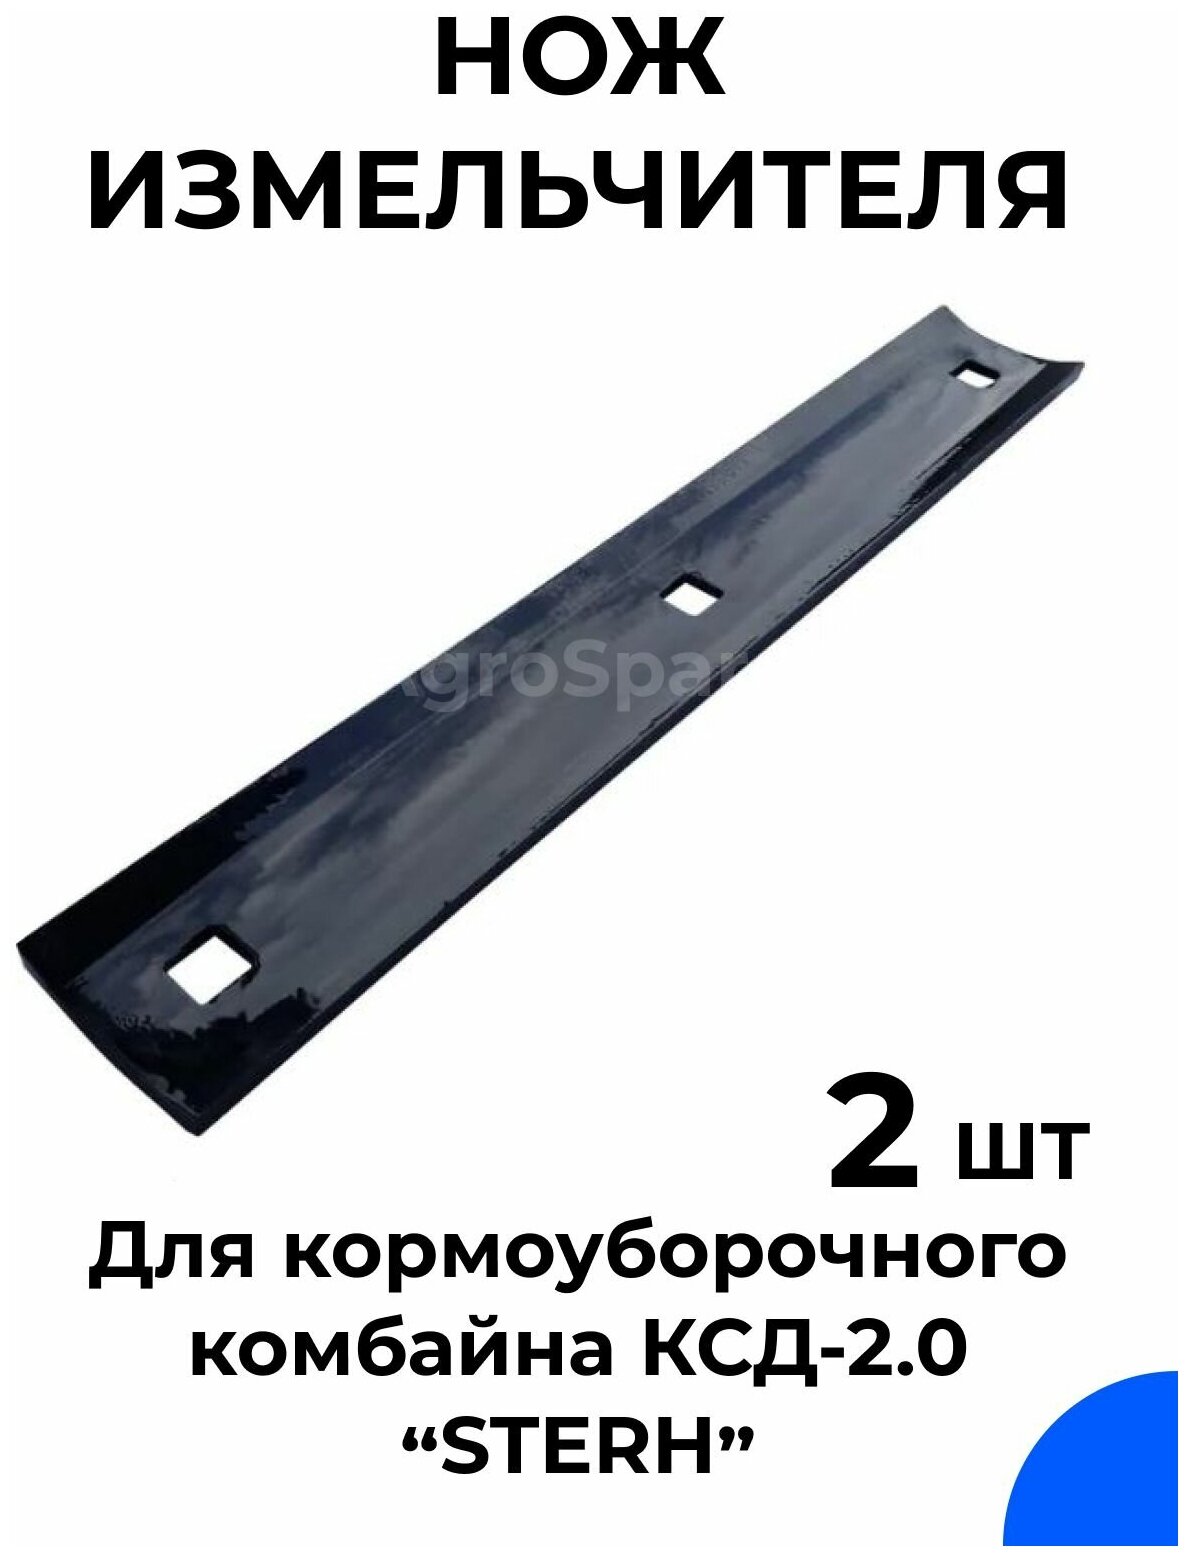 Нож измельчителя для кормоуборочного комбайна КСД-2.0 Sterh / Комплект 2 шт.